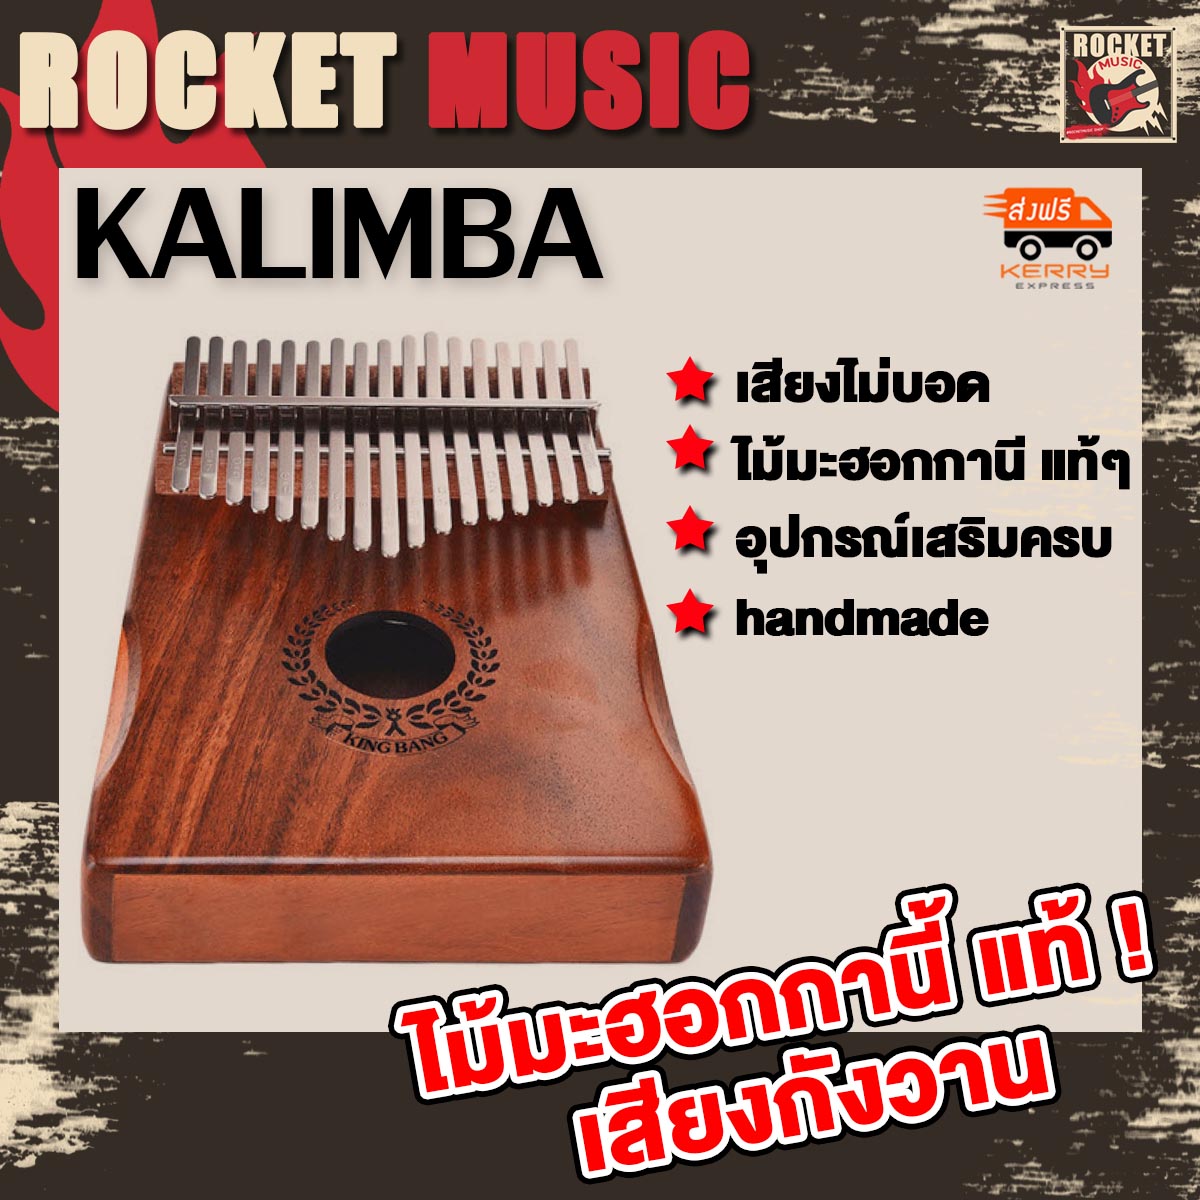 Kalimba คาลิมบา ไม้มะฮอกกานี แท้ๆ Acoustic Thumb Piano คาลิมบา+ อุปกรณ์เสริม คาริมบ้า คาลิมบ้า melodian เปียโนนิ้วมือ 17 คีย์ (17เสียง) เมโลเดี้ยน เมโลเดียน